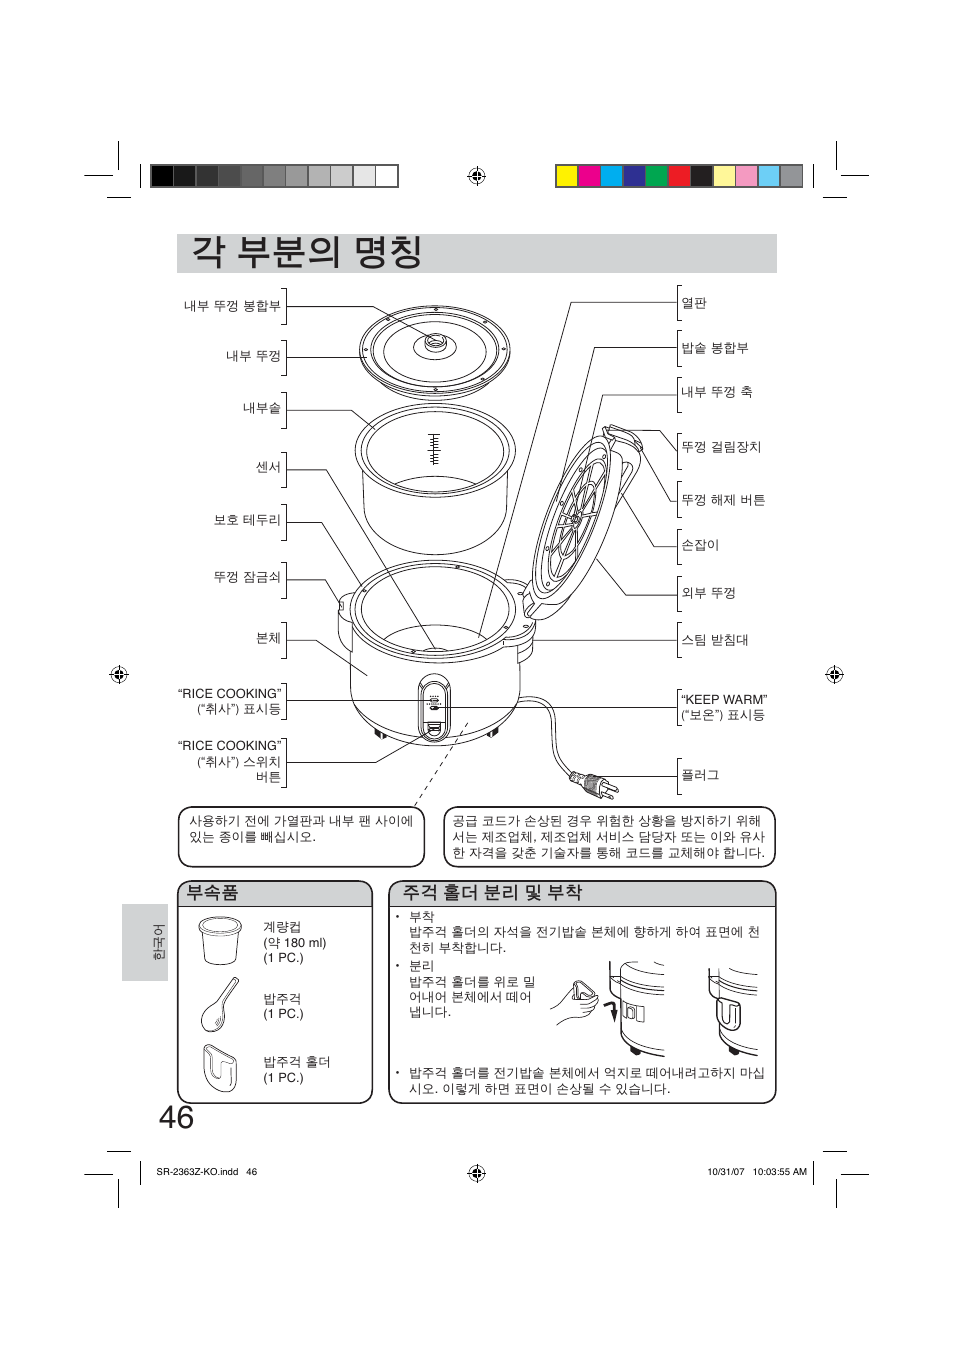 ᝆ⣅⣉㊝◊㦲, 㑁ា䆅ẙ⣉⓱❔⣅㝮 | Panasonic SR2363Z User Manual | Page 46 / 63